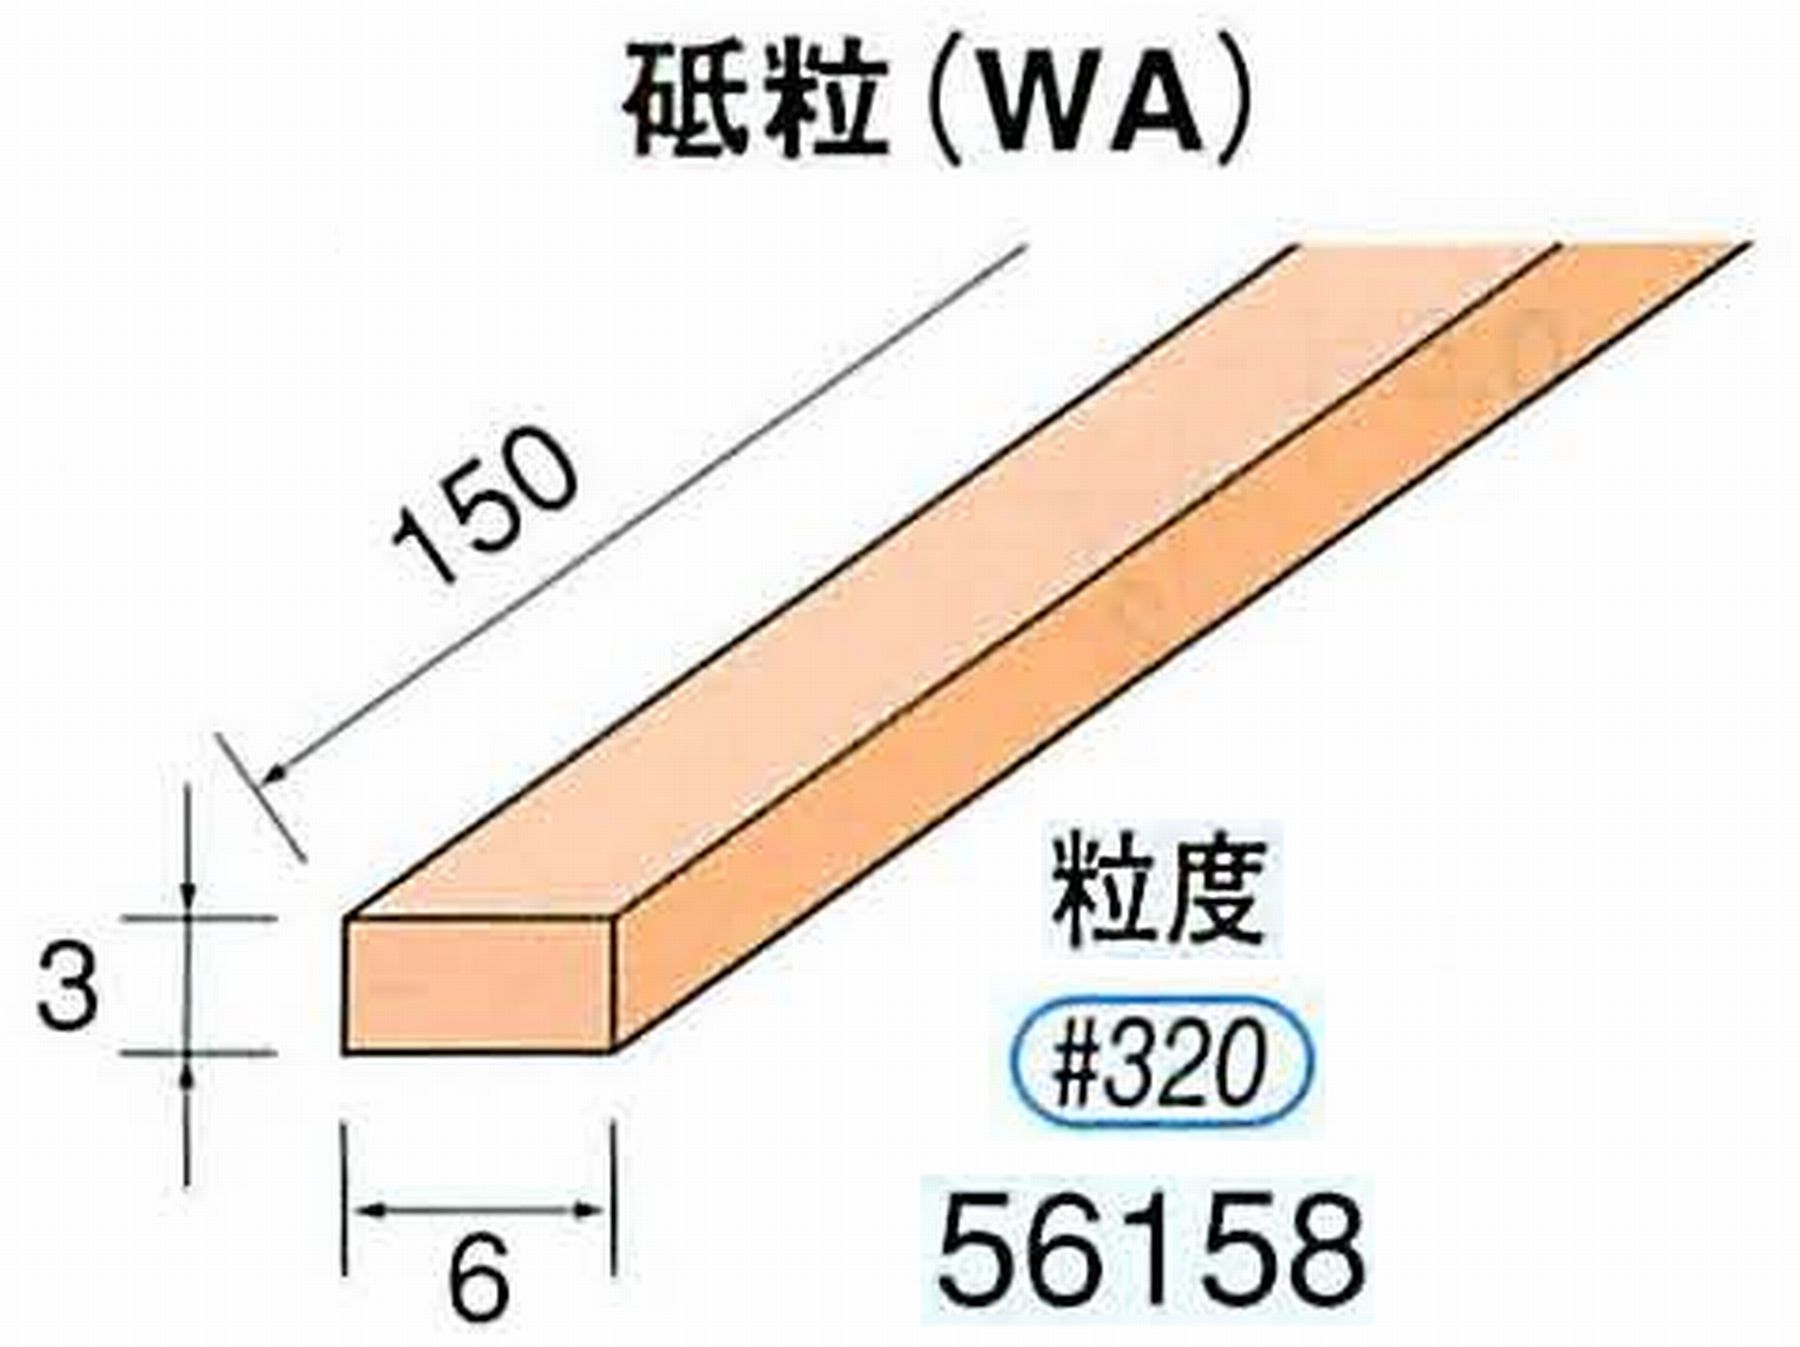 ナカニシ/NAKANISHI スティック砥石 スタンダードシリーズ 砥粒(WA) 56158